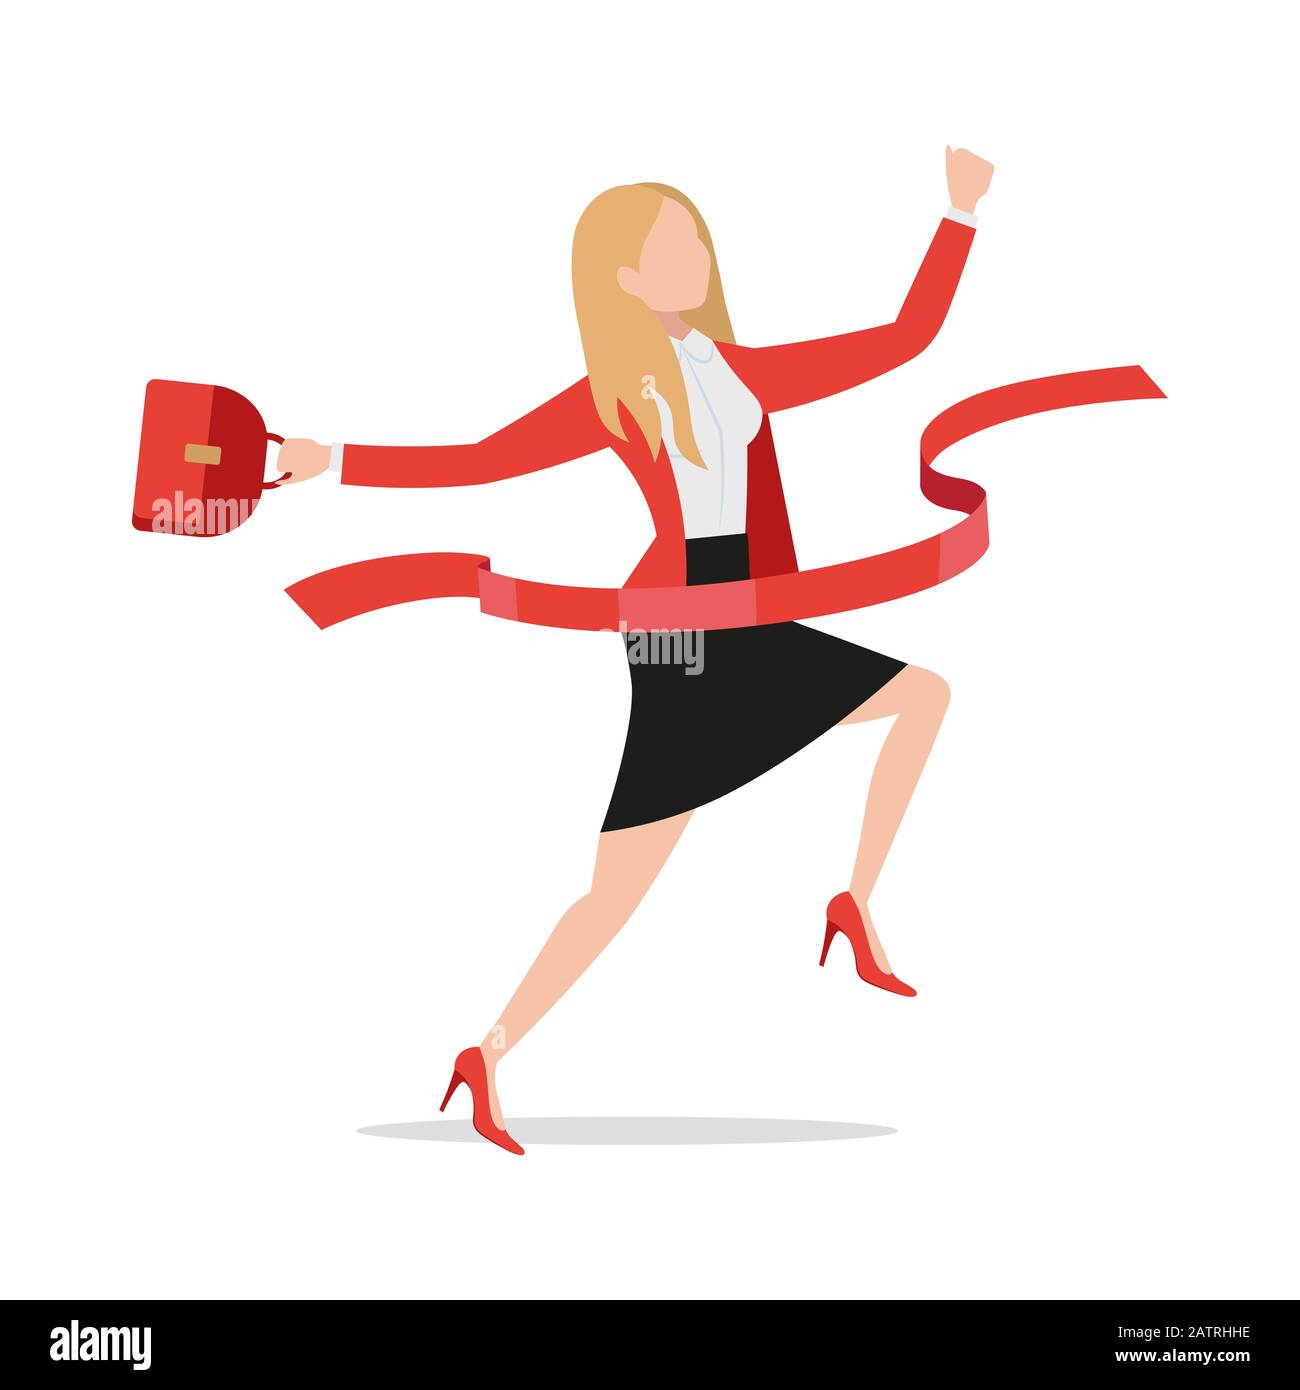 Erfolgreiche Geschäftsfrau, die über die flache Ziellinie geht, begeistert die Unternehmerin der weiblichen Führungskraft, die das rote Band durchbricht Stock Vektor